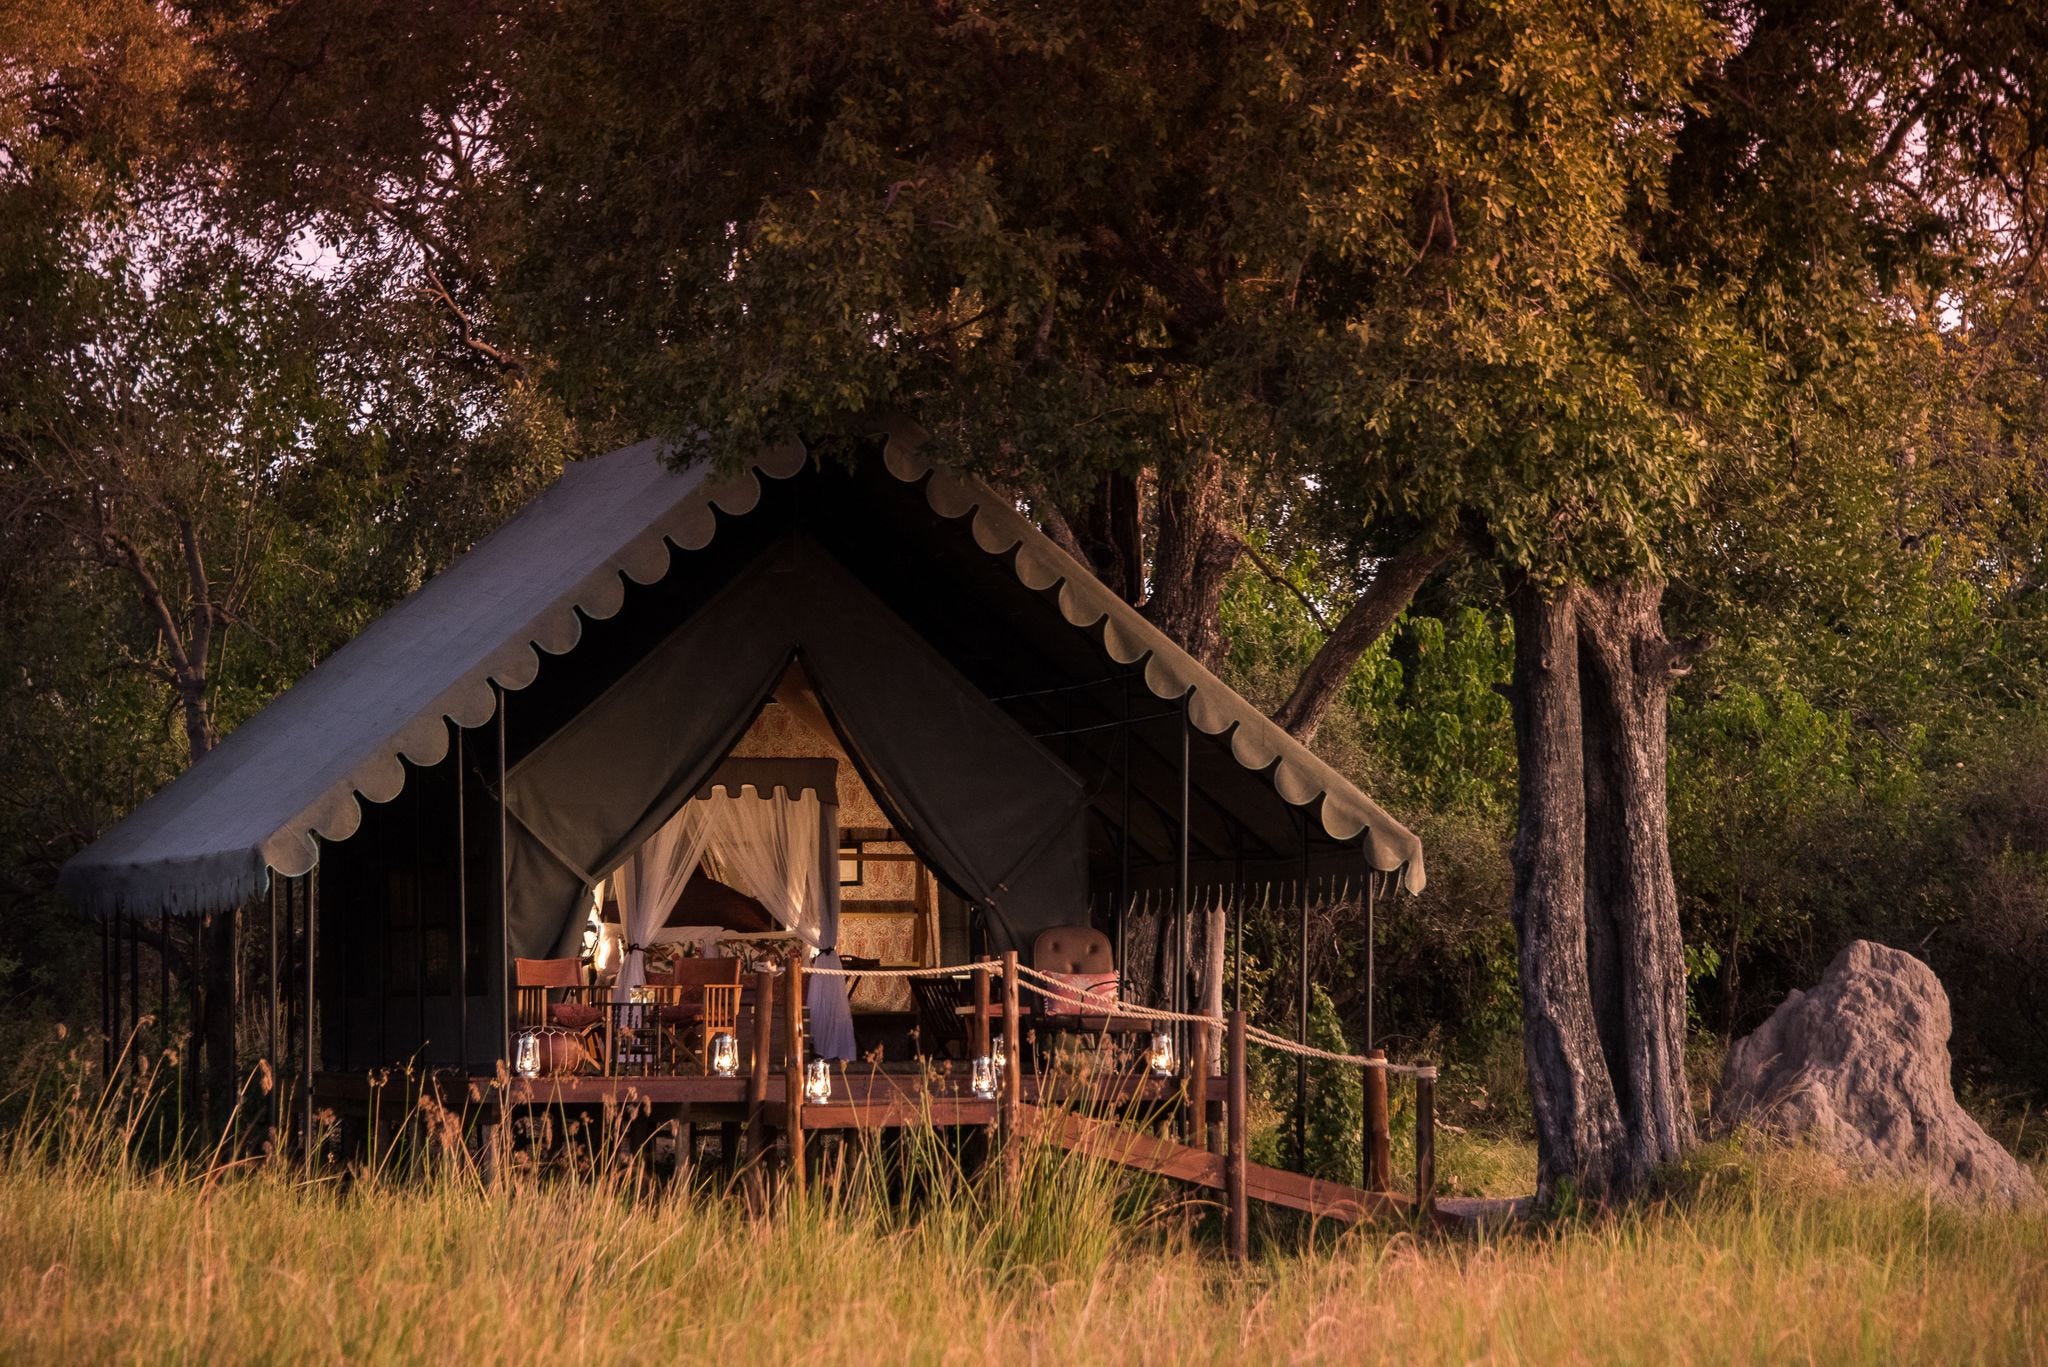 safari camp tent clipart